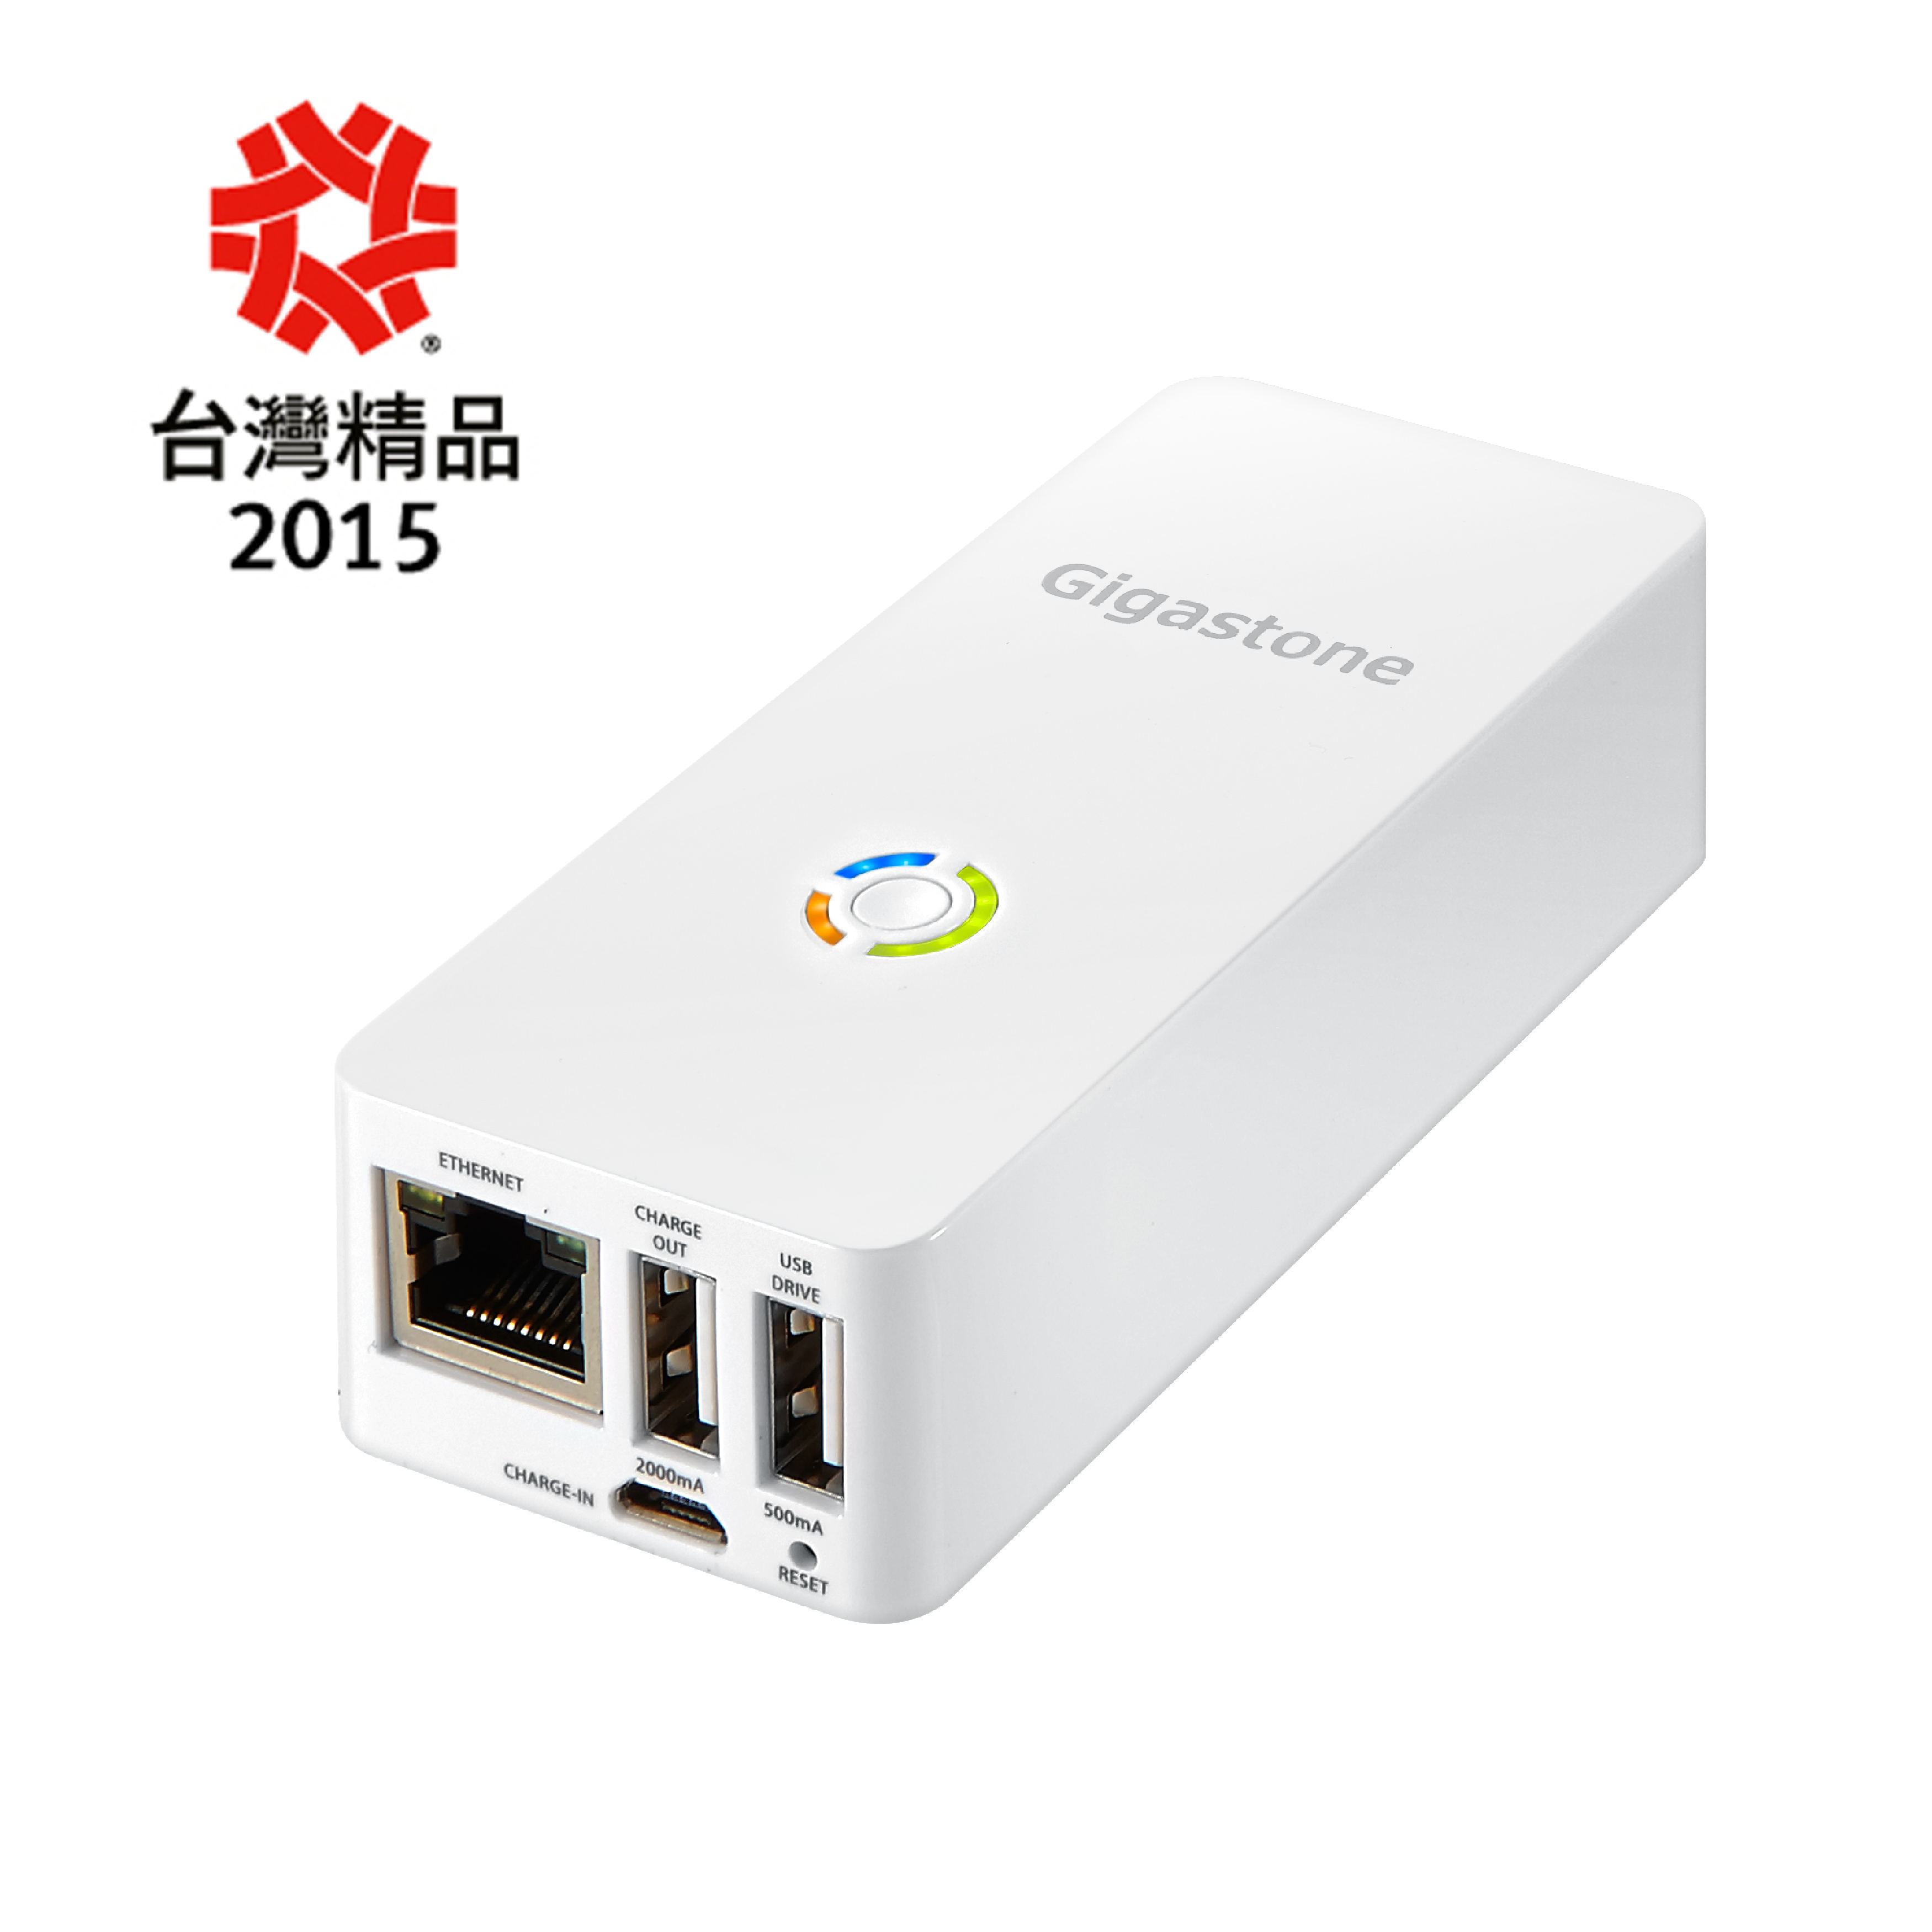 Gigastone立達國際 搶攻手機周邊市場 榮獲2015台灣精品獎行銷全球